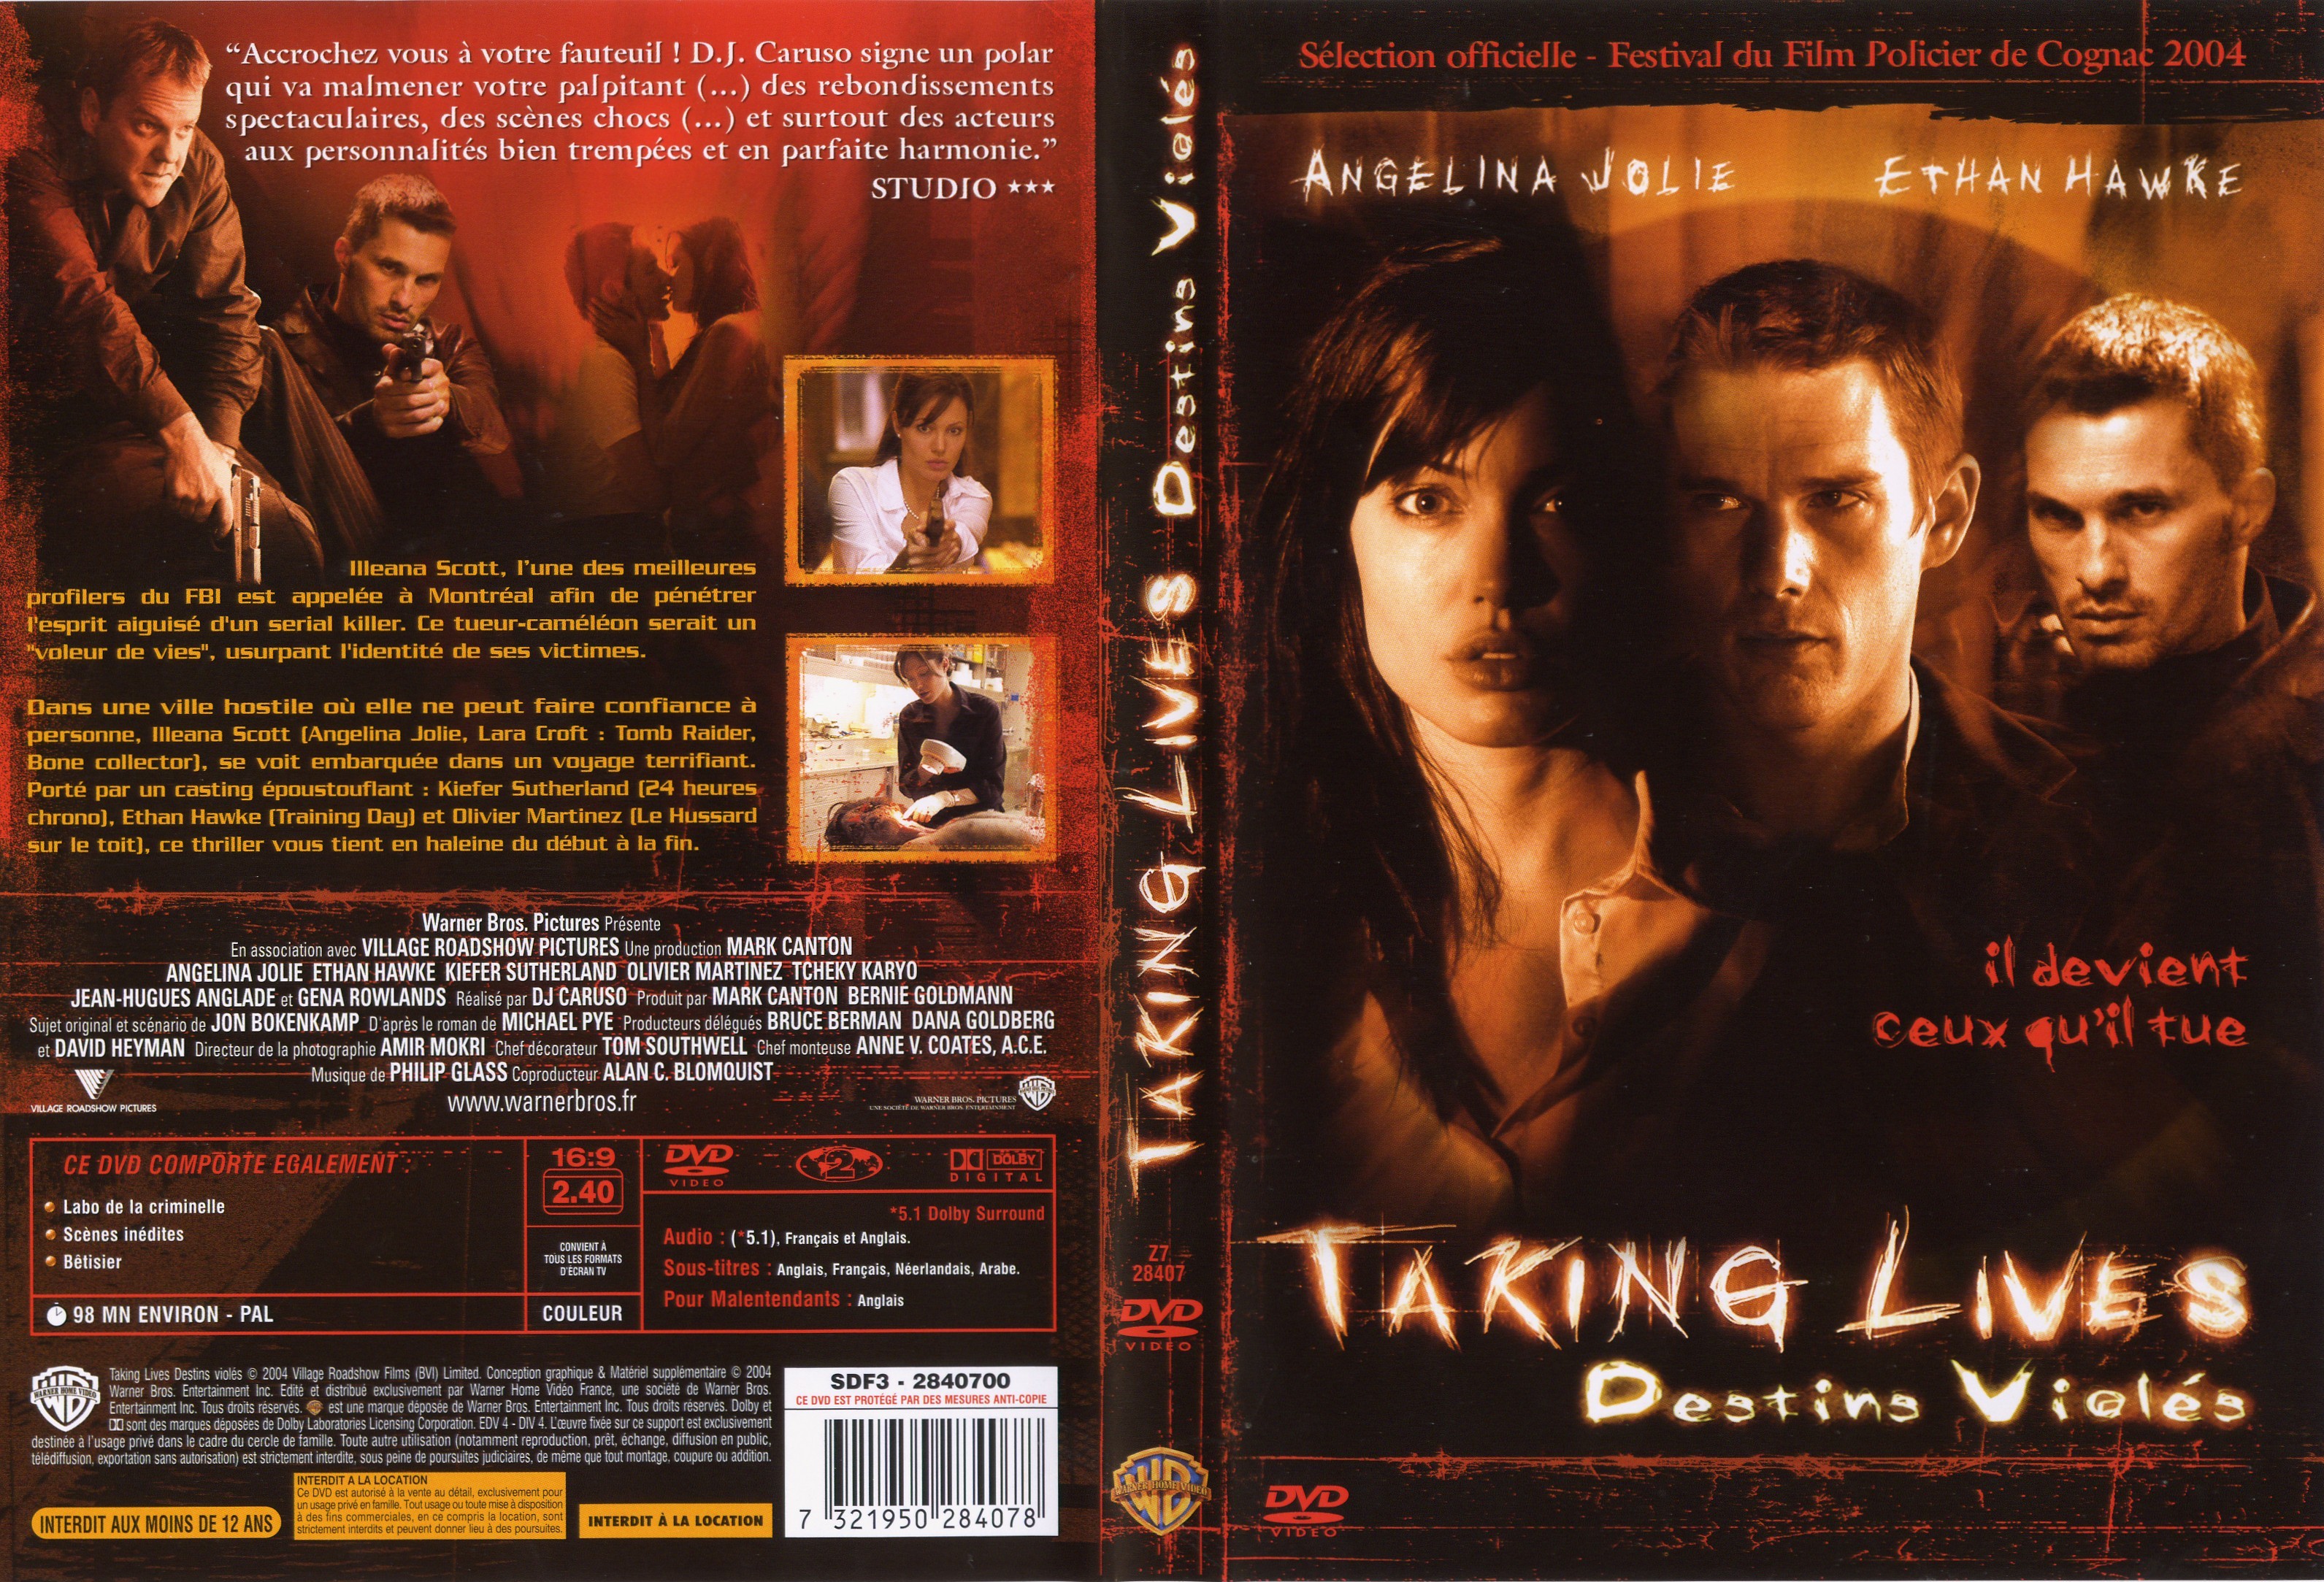 Lives de. Забирая жизни DVD 2004. Забирая жизни (DVD). Живое (DVD). Taking Lives 2004 DVD Cover.